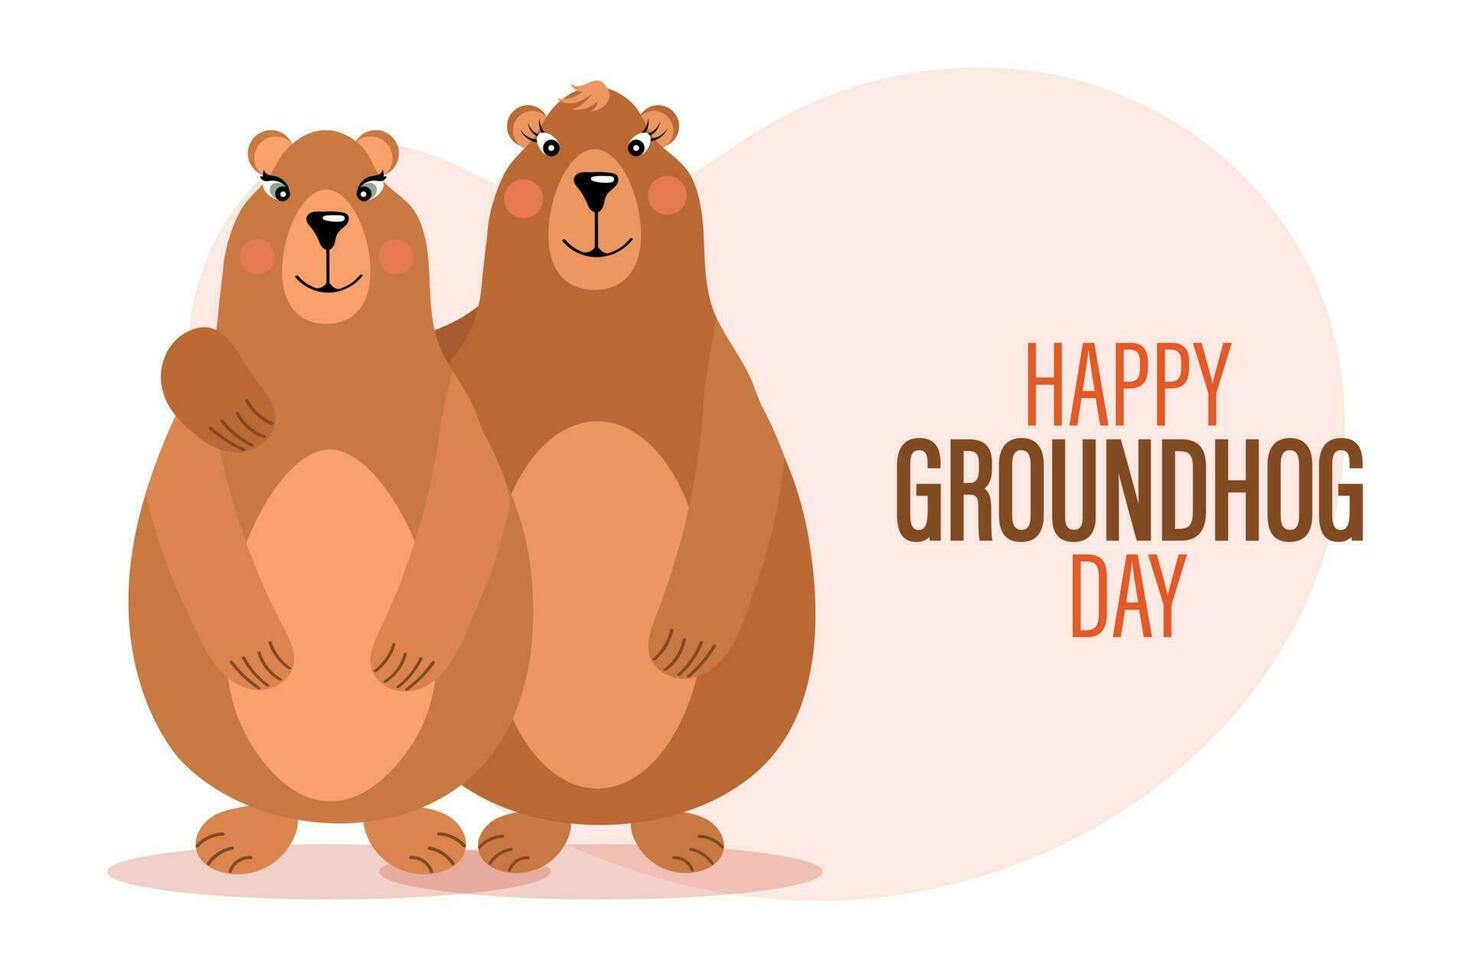 feliz dia da marmota, par de marmotas apaixonadas por corações. banner de felicitações, cartão, cartaz, vetor